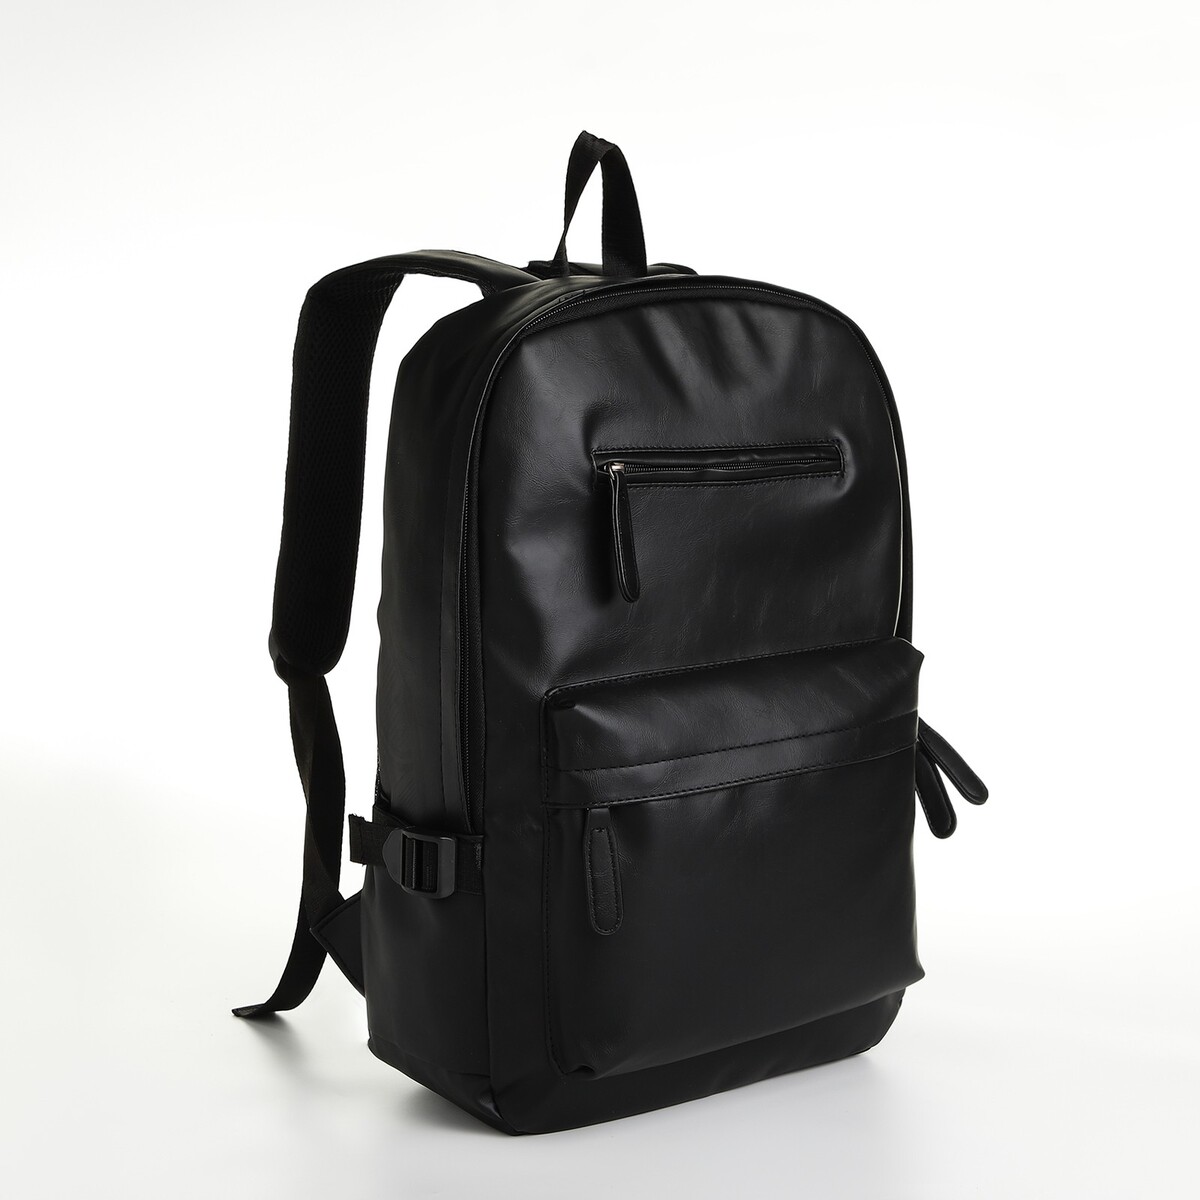 Рюкзак городской из искусственной кожи на молнии, 4 кармана, цвет черный